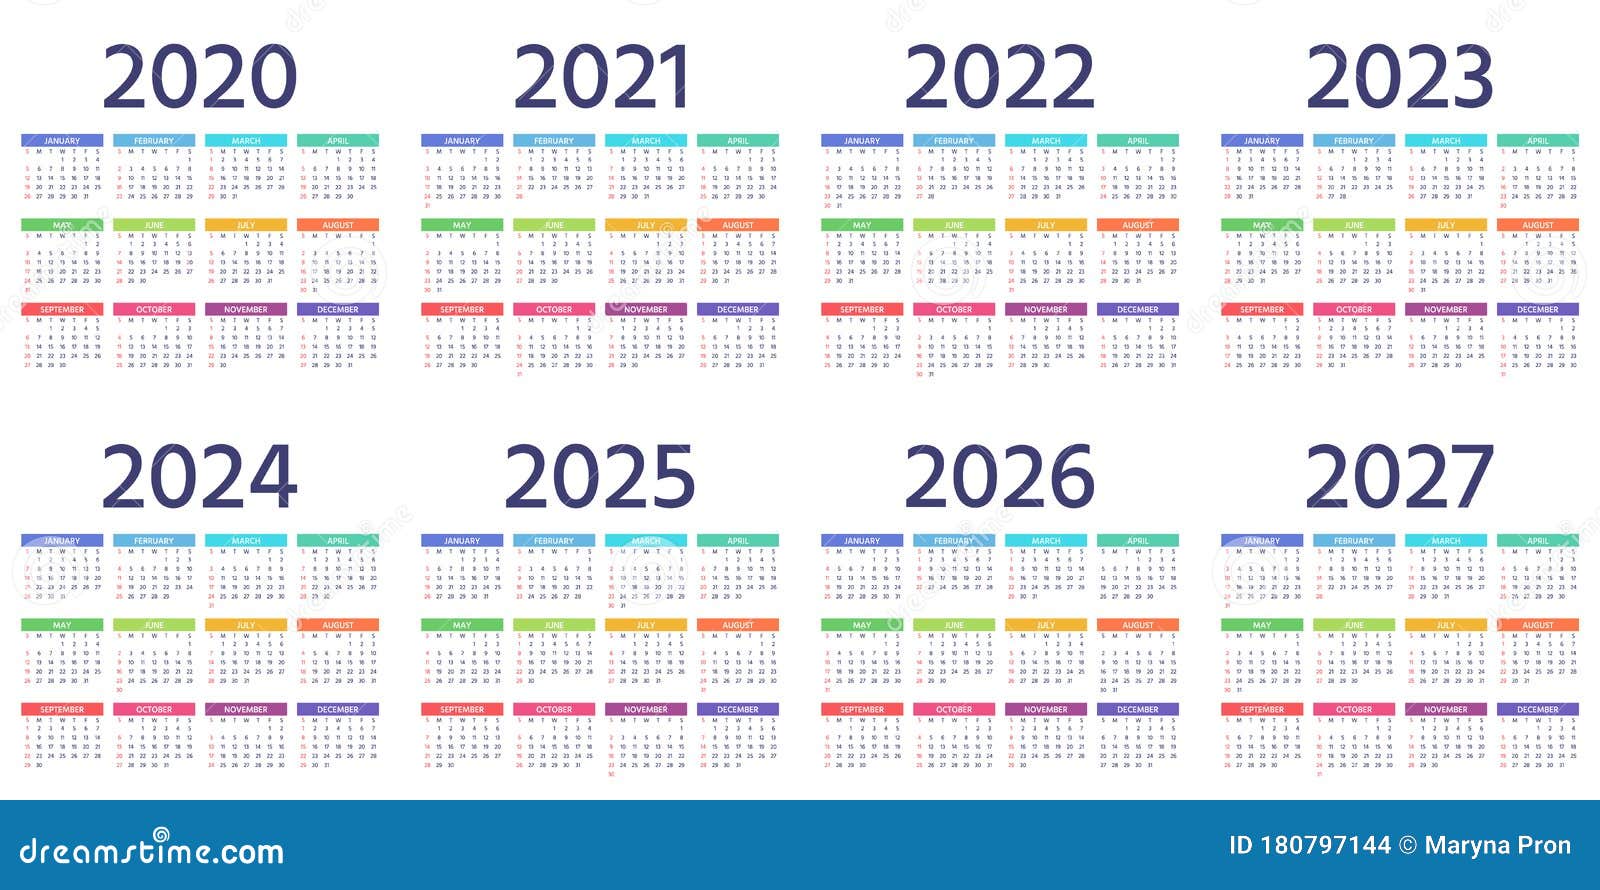 Календарь на 2024 год эксель. Календарь 2022 2023 2024. Календарь 2023 2024 2025 2026. Календарь 2021-2022. Календарь 2022-2023 год.